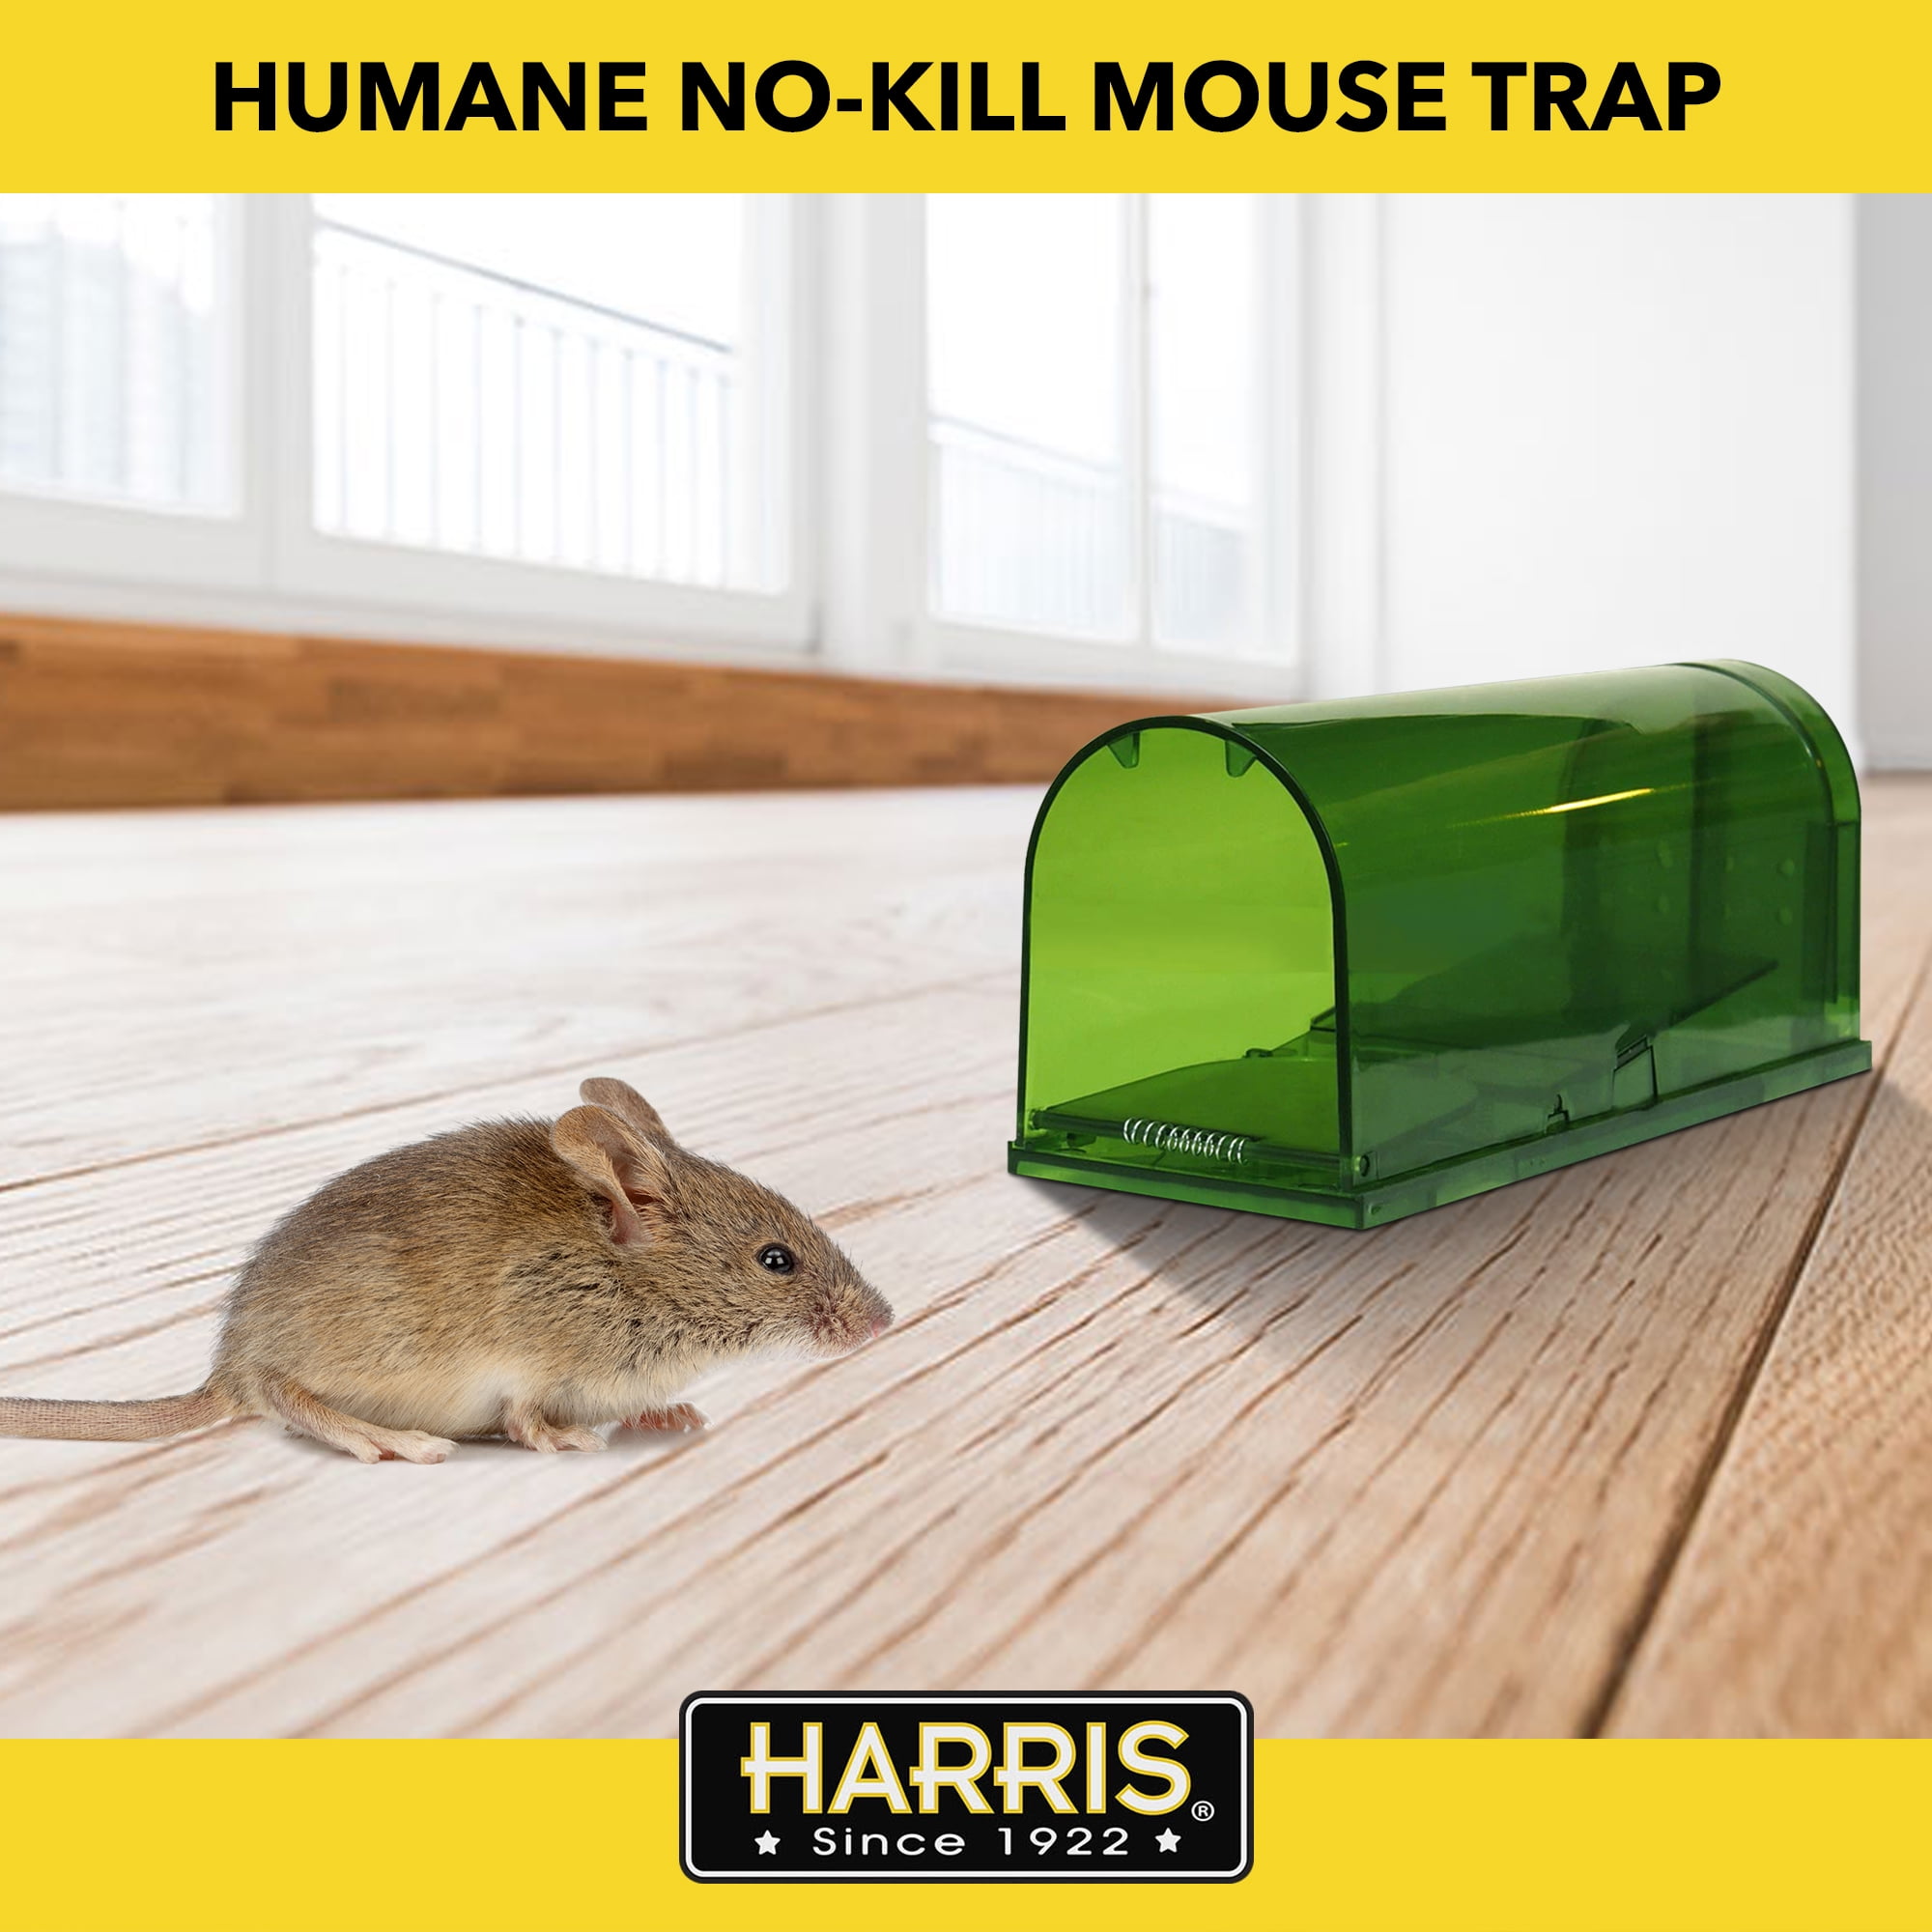 Humane trap - mouse trap - metal, silver - buy now! symbol:730407